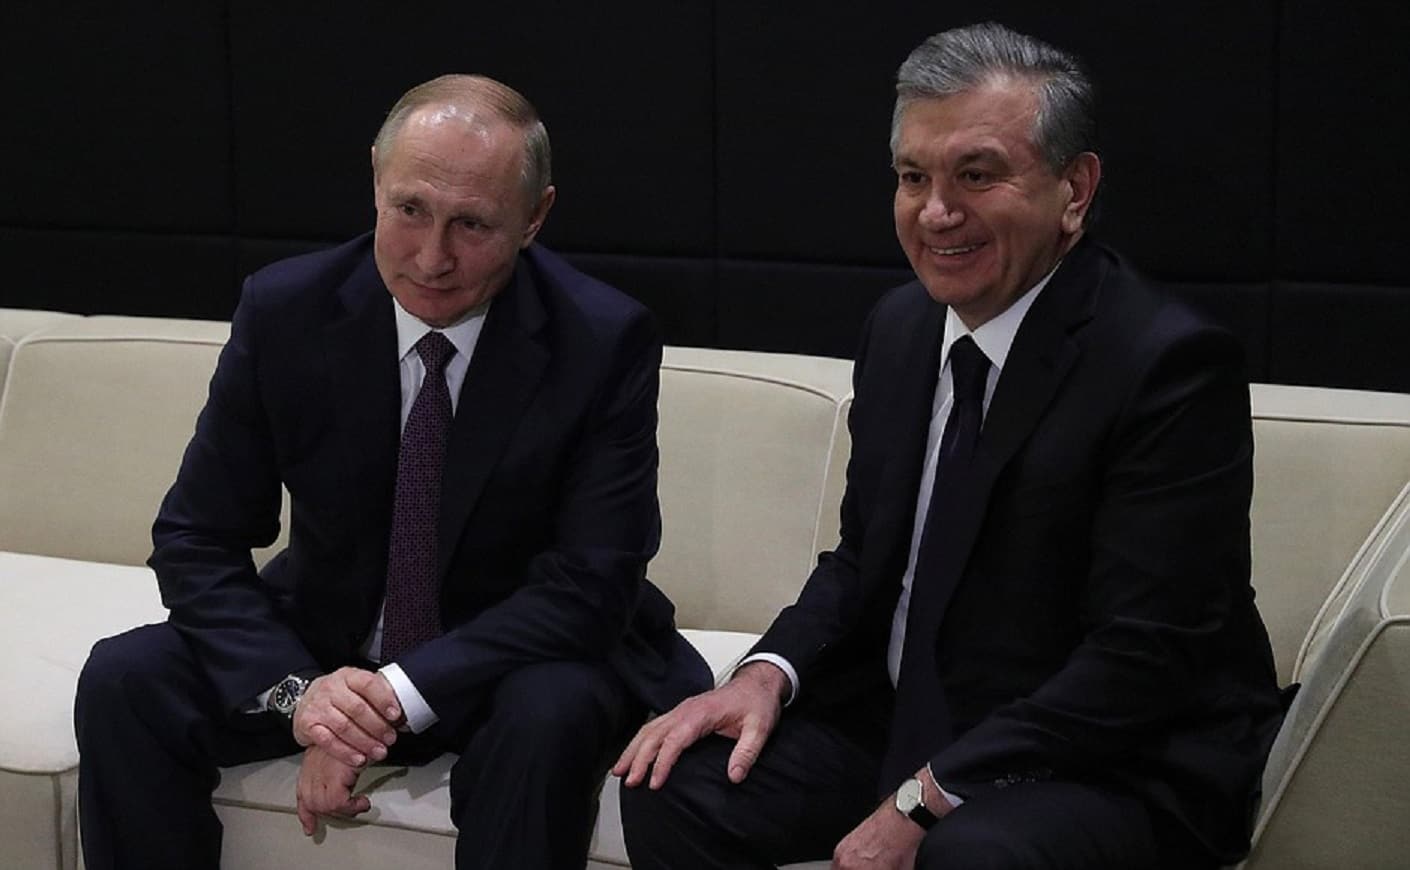 Өзбекстан Еуразиялық одақтың бақылаушысы болды. Путиннің көңілі тоқ 